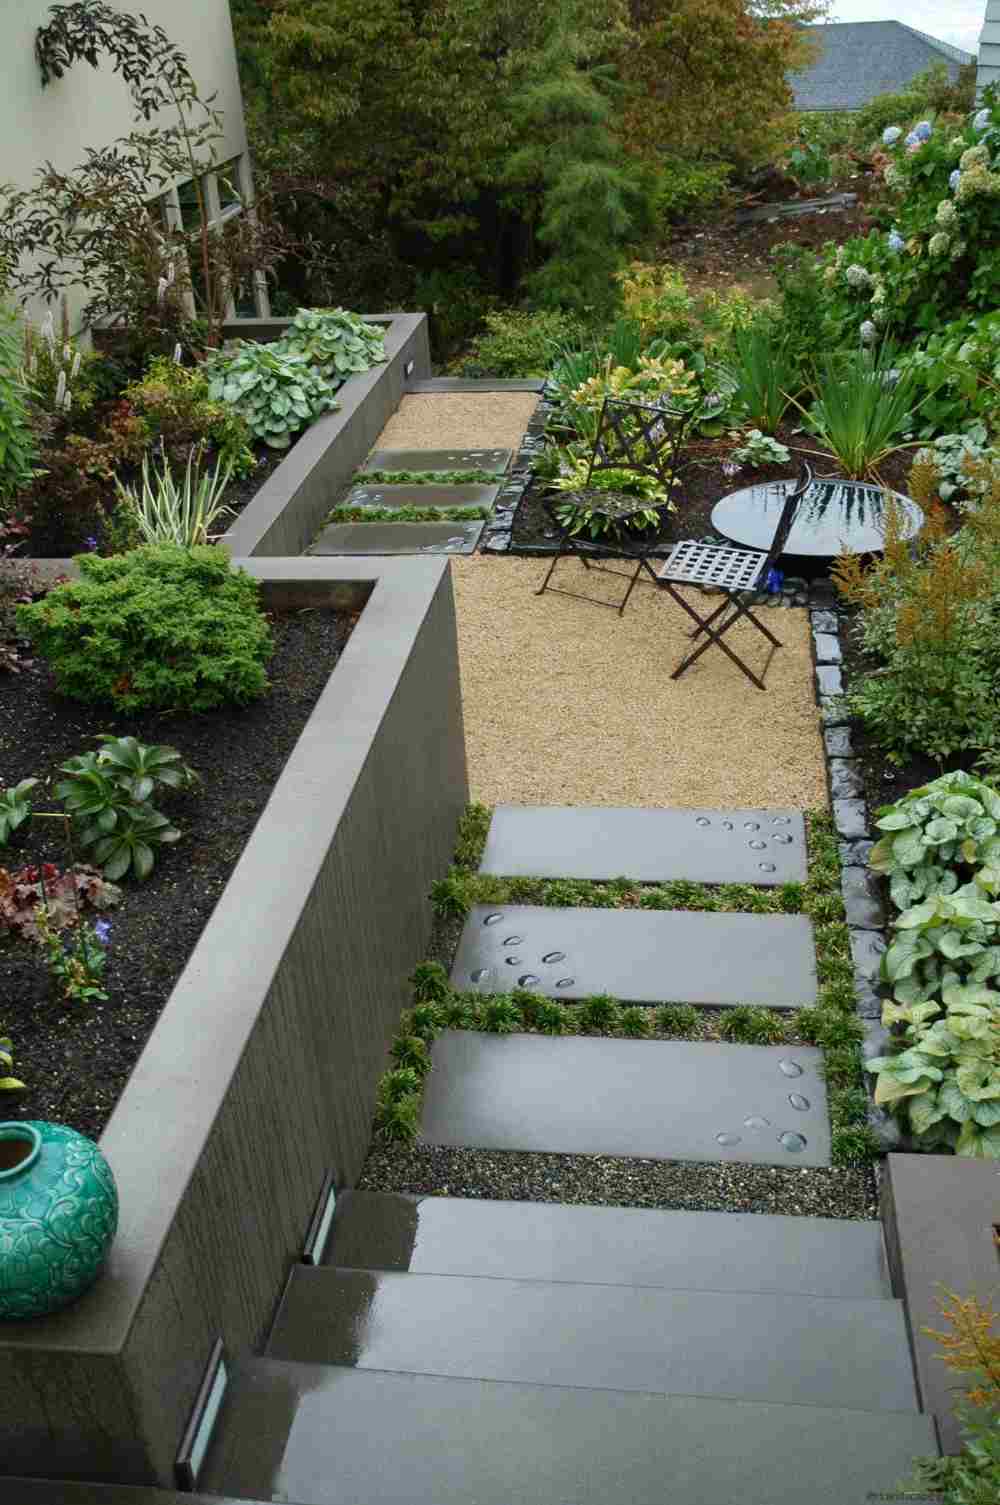 designer garden scraps with concrete stairs and garden plants and garden furniture garden